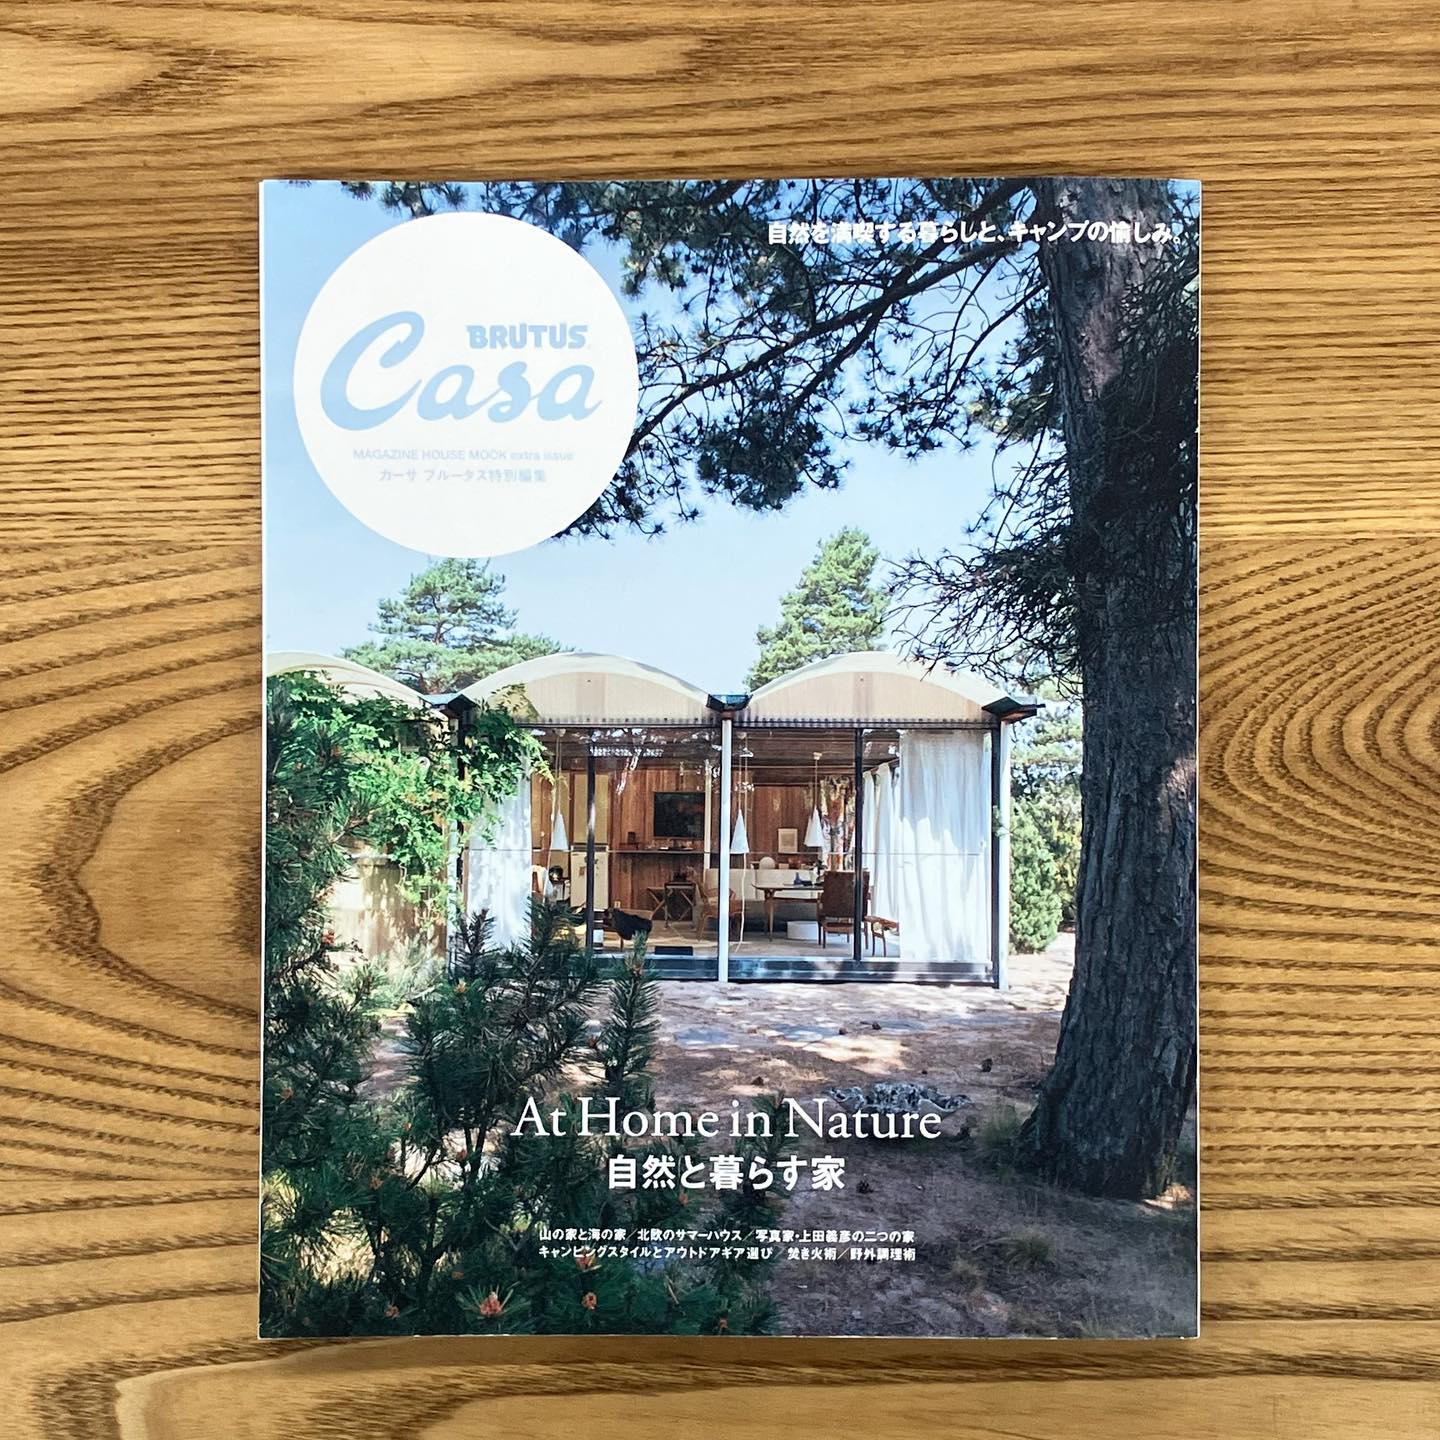 【雑誌掲載情報】『Casa BRUTUS 特別編集 – 自然と暮らす家 -』にHang Outのアイテムが掲載されました